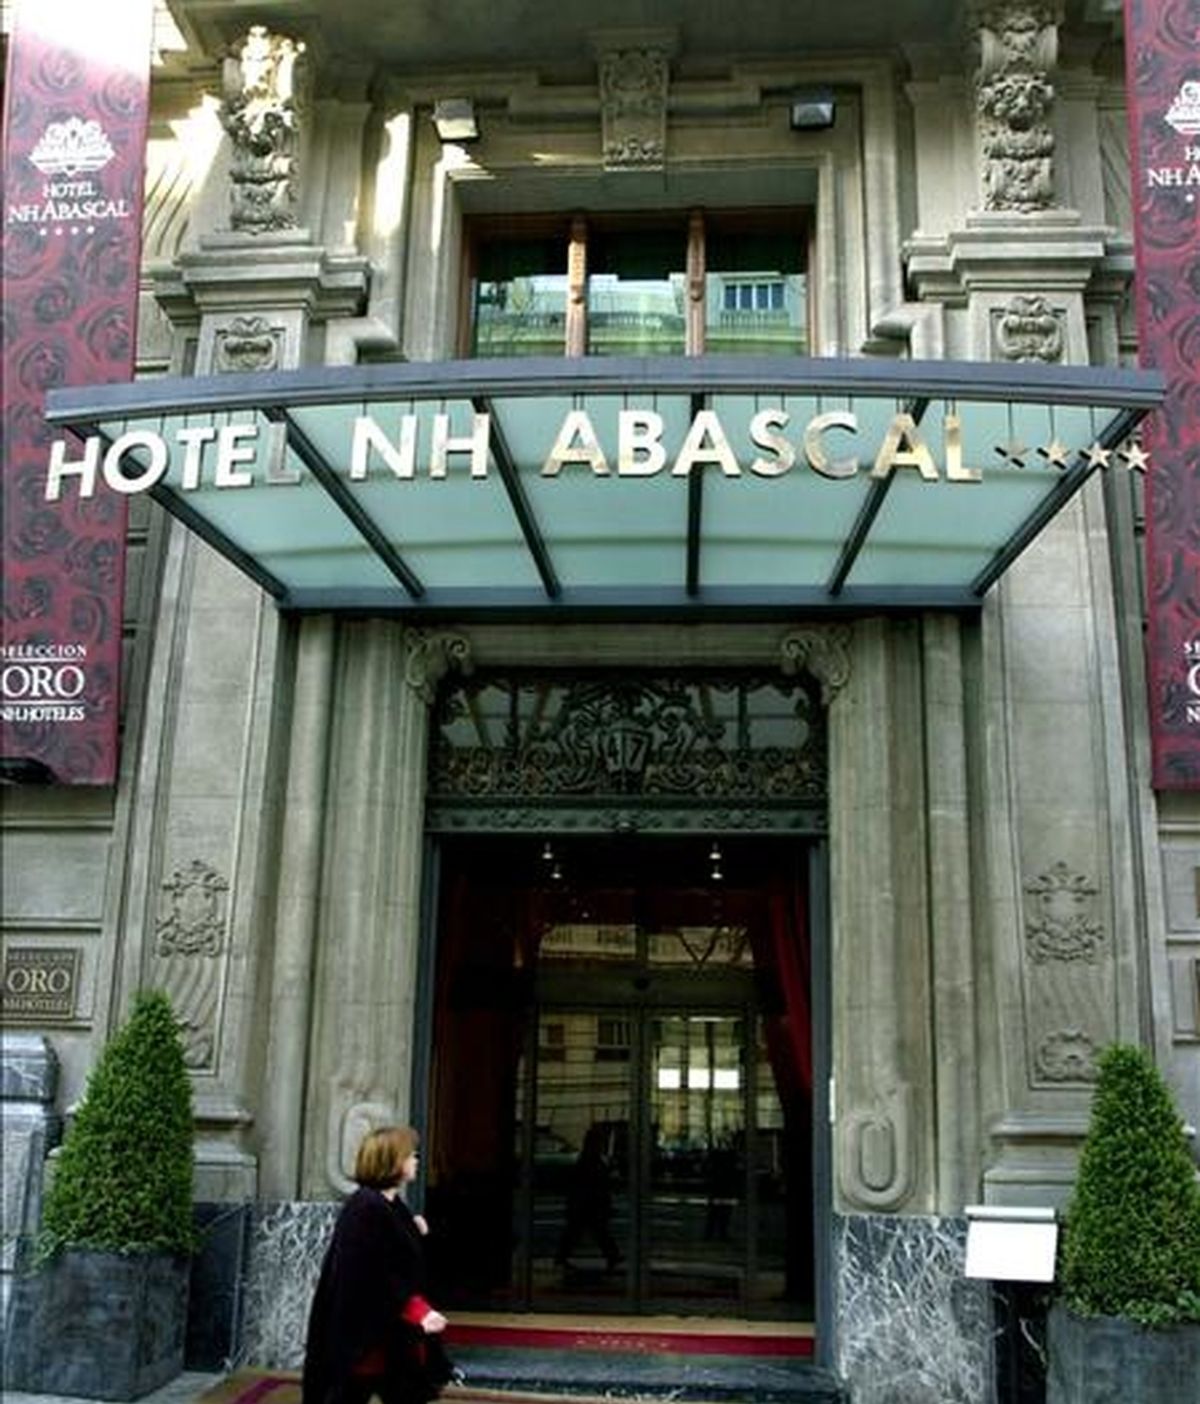 Fachada de uno de los hoteles que la cadena NH tiene en Madrid. EFE/Archivo